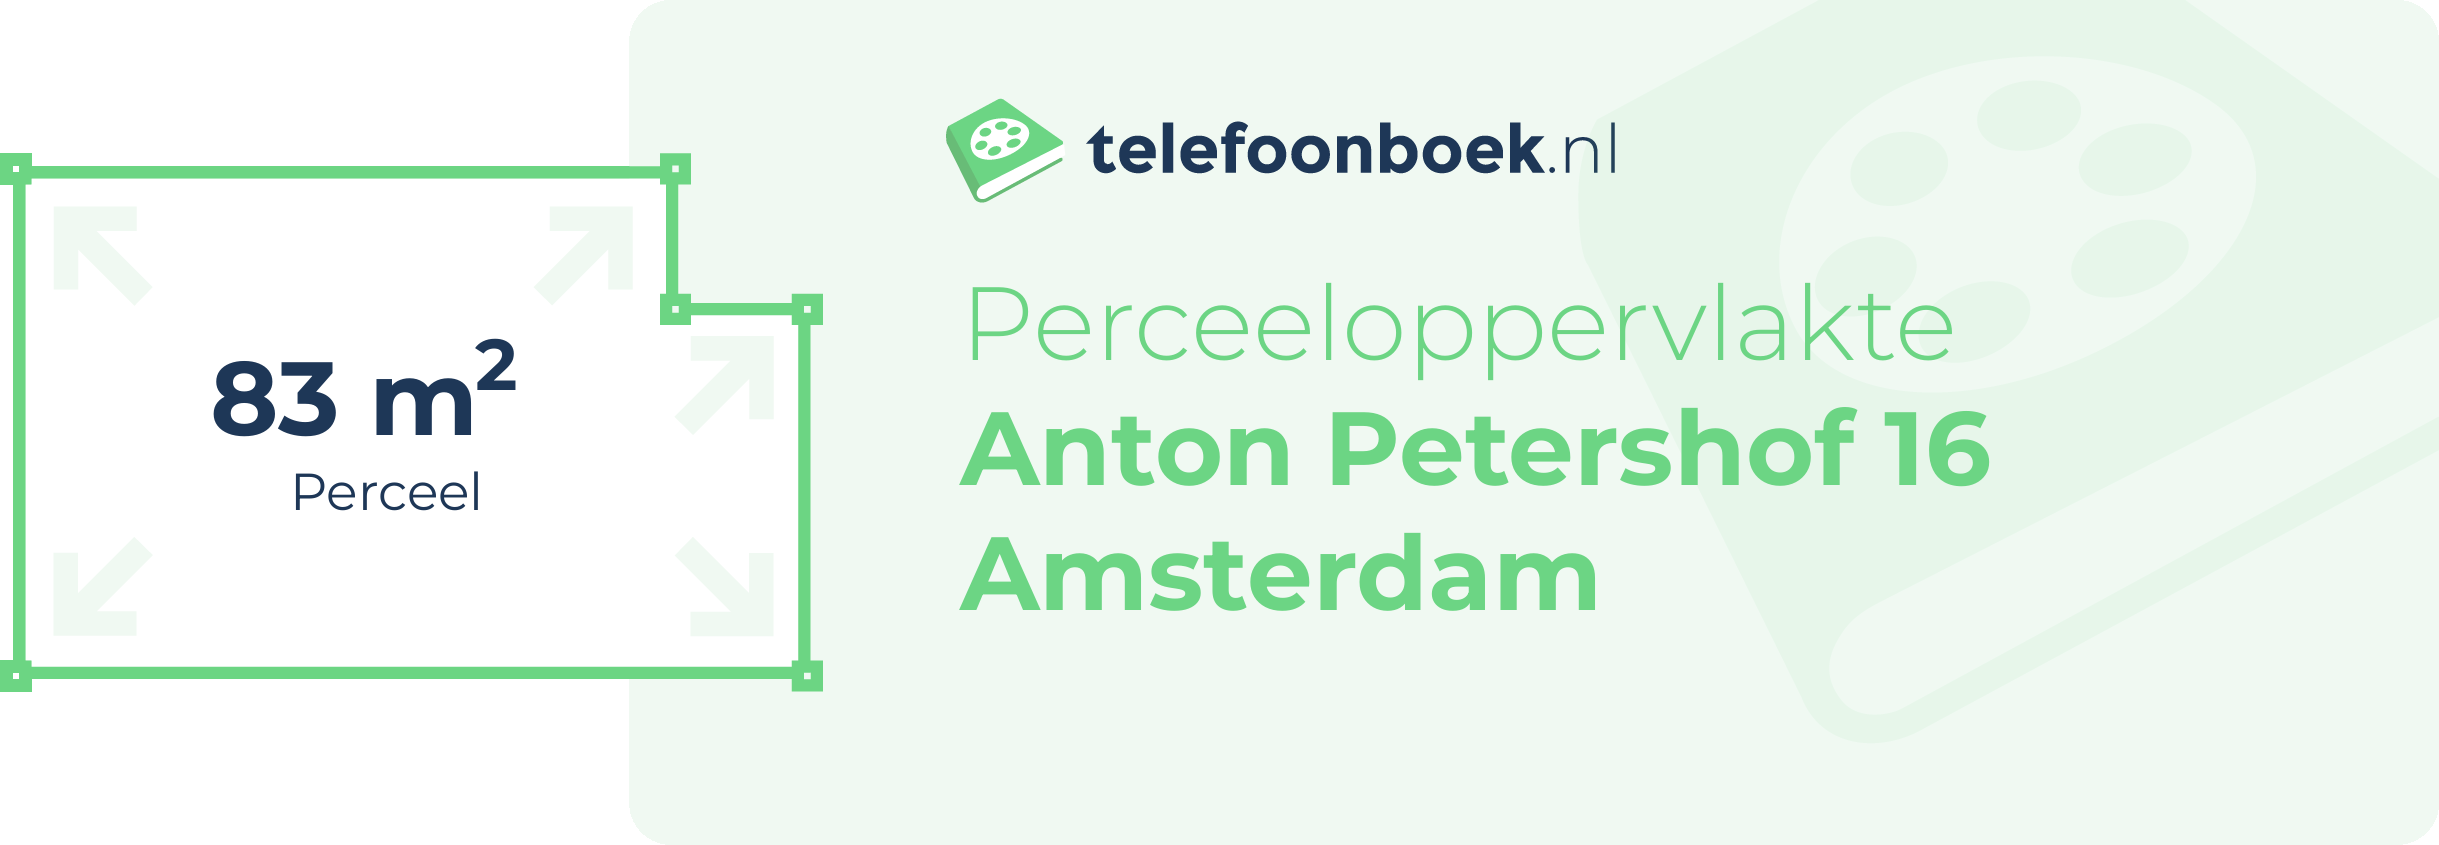 Perceeloppervlakte Anton Petershof 16 Amsterdam